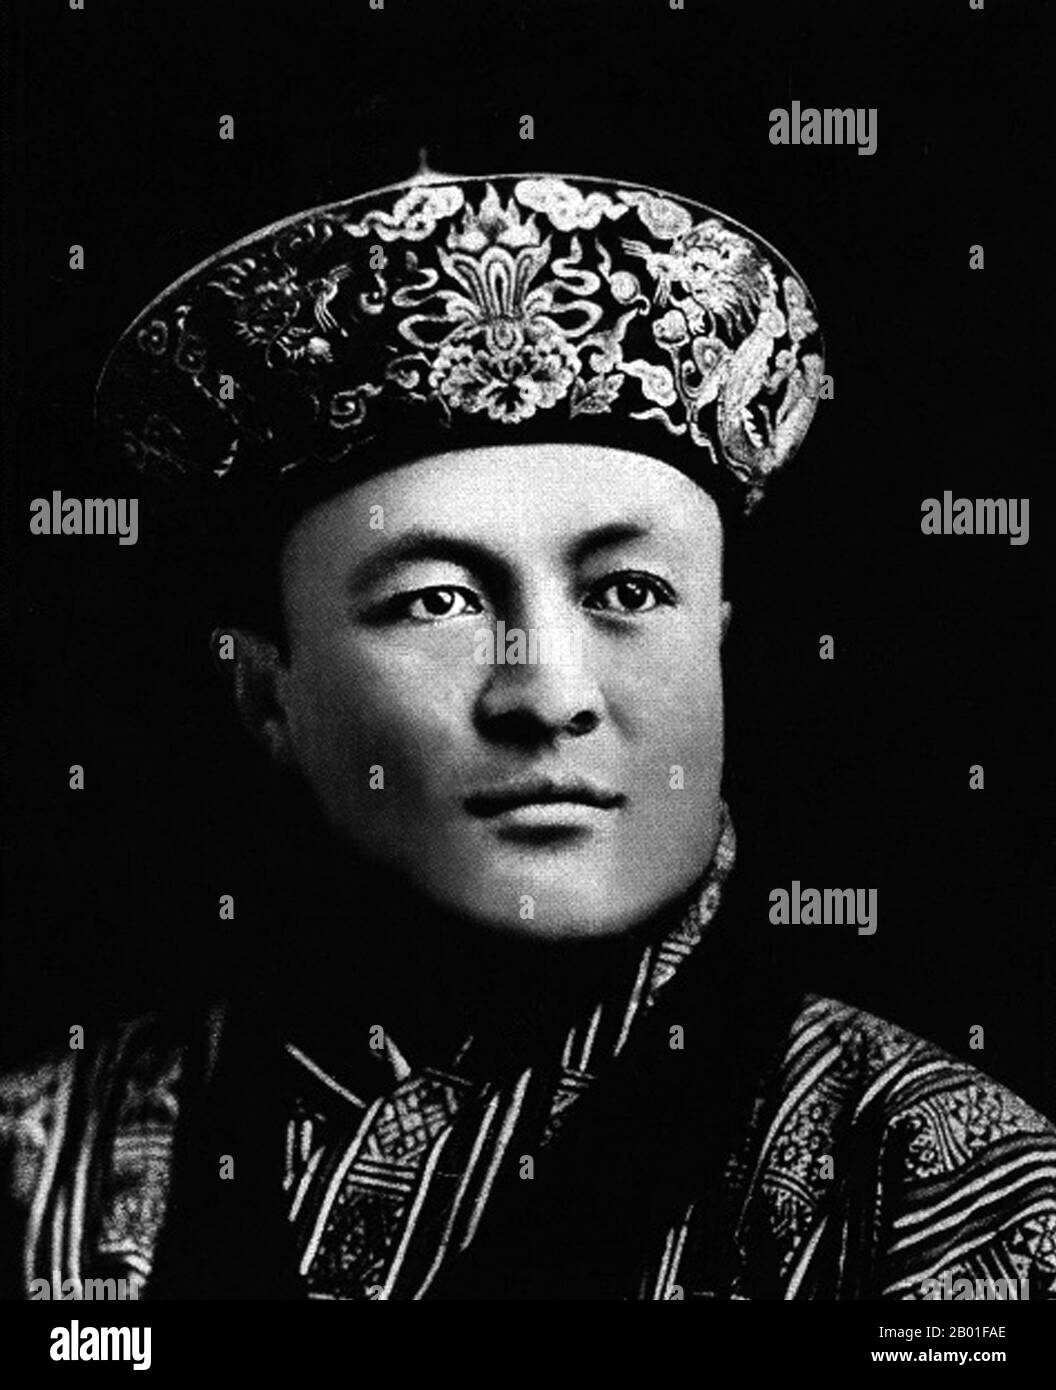 Bhutan: Sua Maestà Jigme Wangchuck (1905 - 30 marzo 1952), 2nd Druk Gyalpo o 'Dragon King' (r. 1926-1952), c. 1926. Jigme Wangchuk fu il 2nd° Gyalpo di Druk del Bhutan, ascendente al trono nel 1926 dopo la morte del padre, Ugyen Wangchuck. Nell'ambito delle riforme giuridiche e infrastrutturali durante il suo regno, continuò la politica del Bhutan di isolamento quasi completo dal mondo esterno, con gli unici legami esteri che erano con il Raj britannico in India. Il Druk Gyalpo ('Re del Drago') è il capo di stato del Bhutan. È anche conosciuto in inglese come il re del Bhutan. Foto Stock